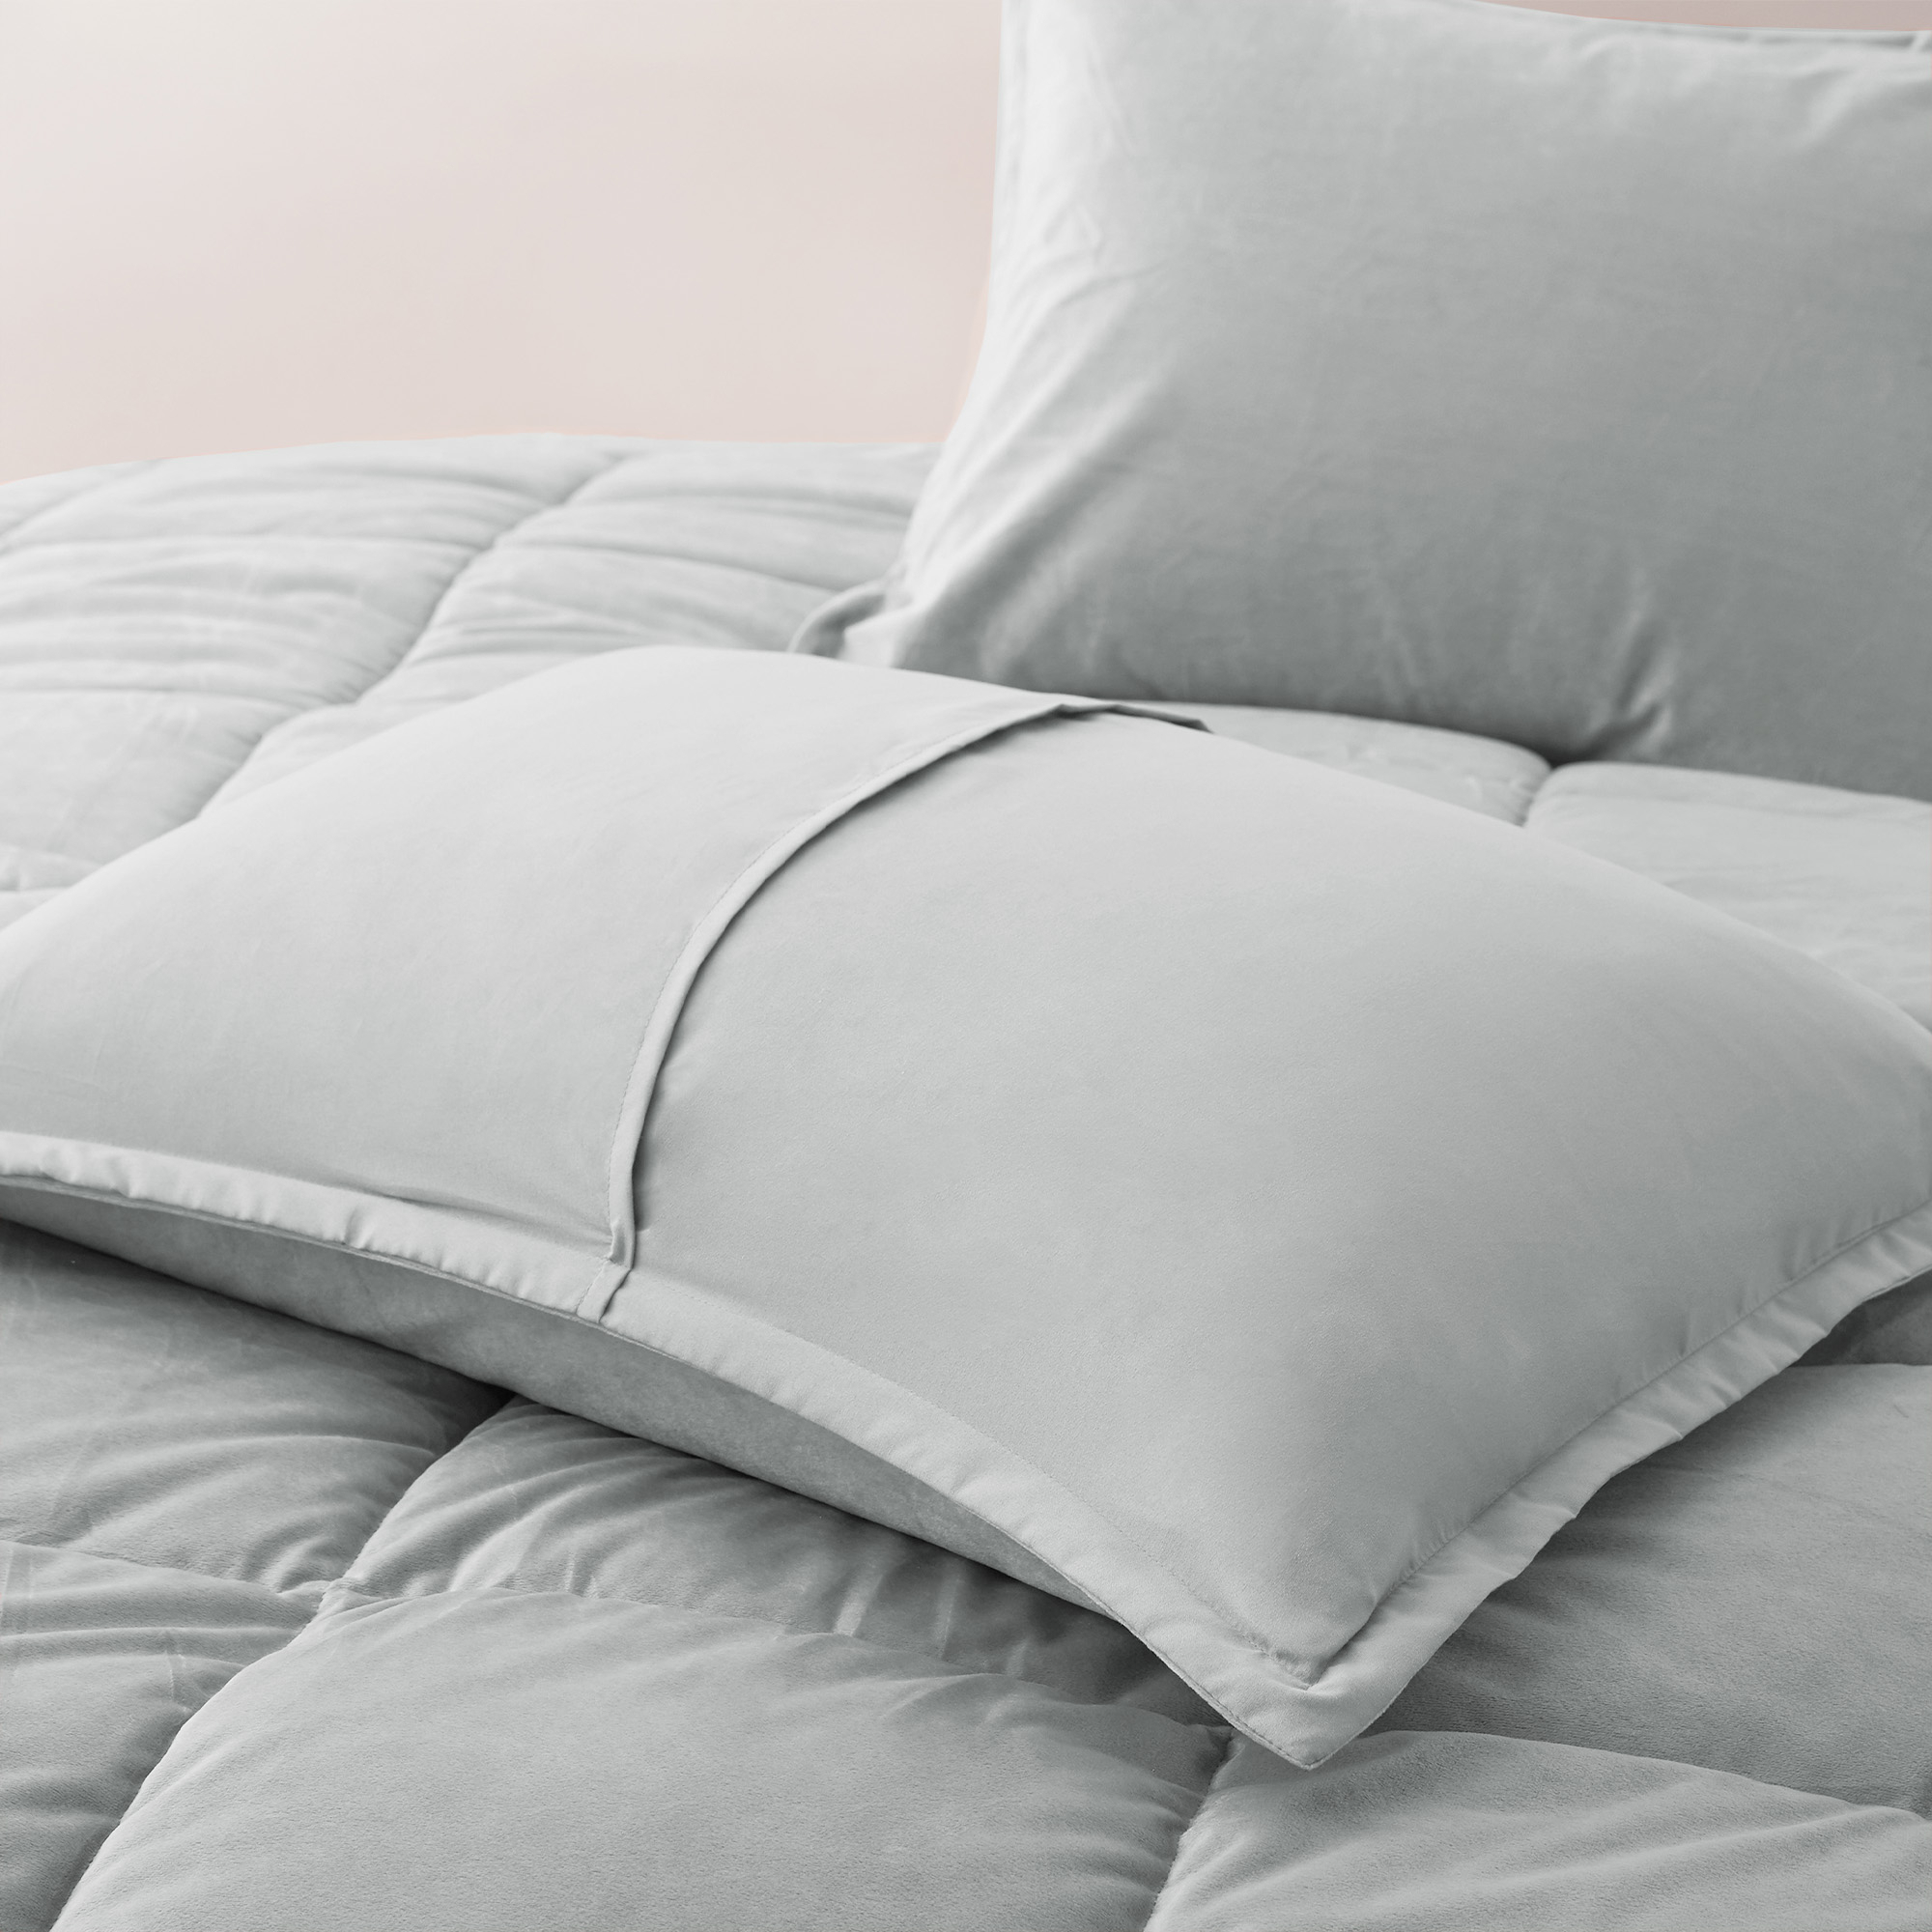 3 Piece Reversible Velvet Comforter Set With Sham - Grey, Full/Queen